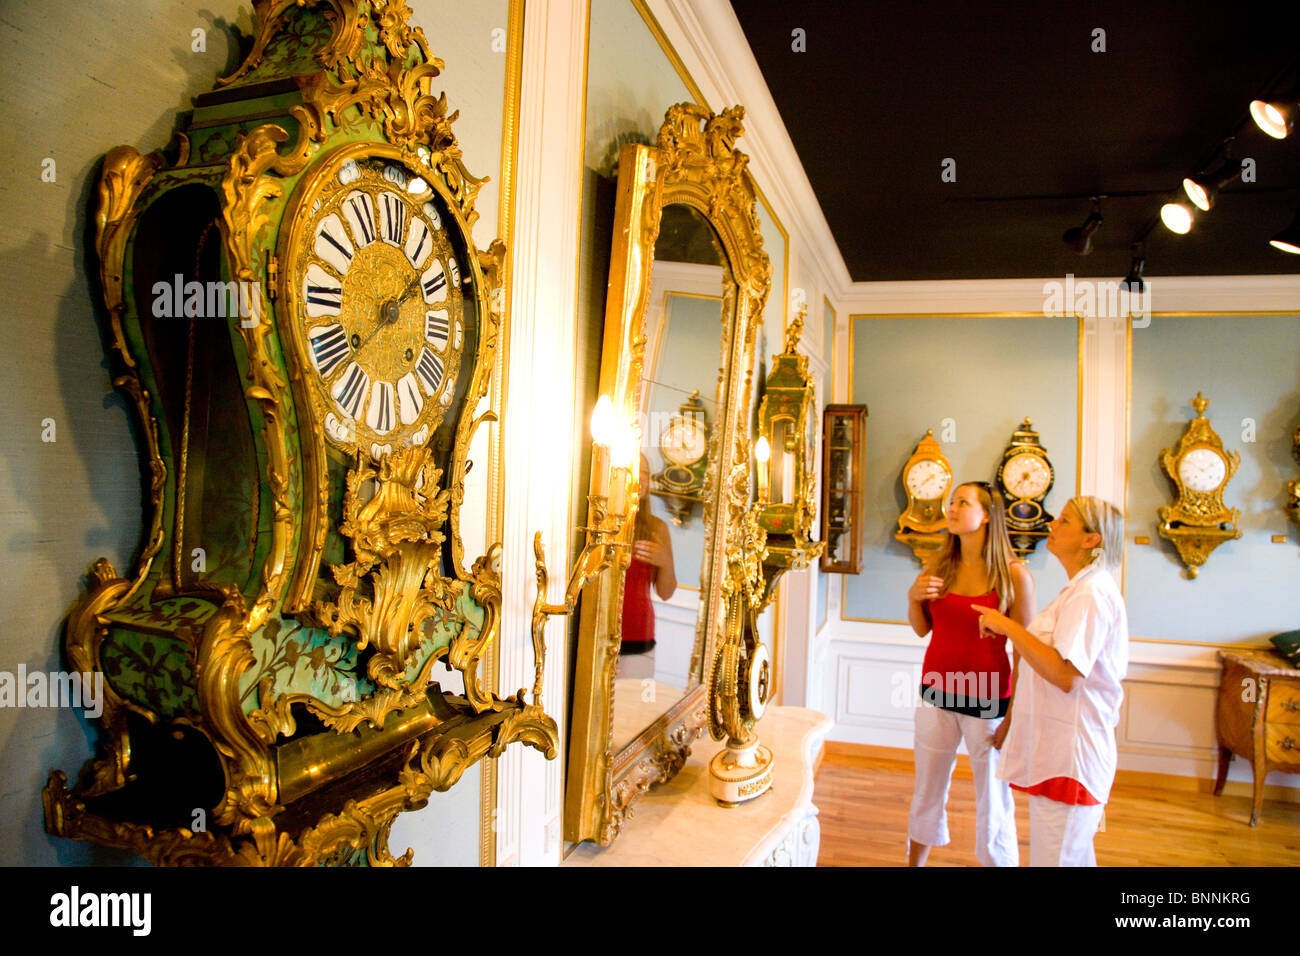 Schweiz Schweizer Le Locle Uhrenmuseum im Inneren Uhren Uhren Museum Spiegel  Antik Besucher Personen zwei touristische Kanton Stockfotografie - Alamy